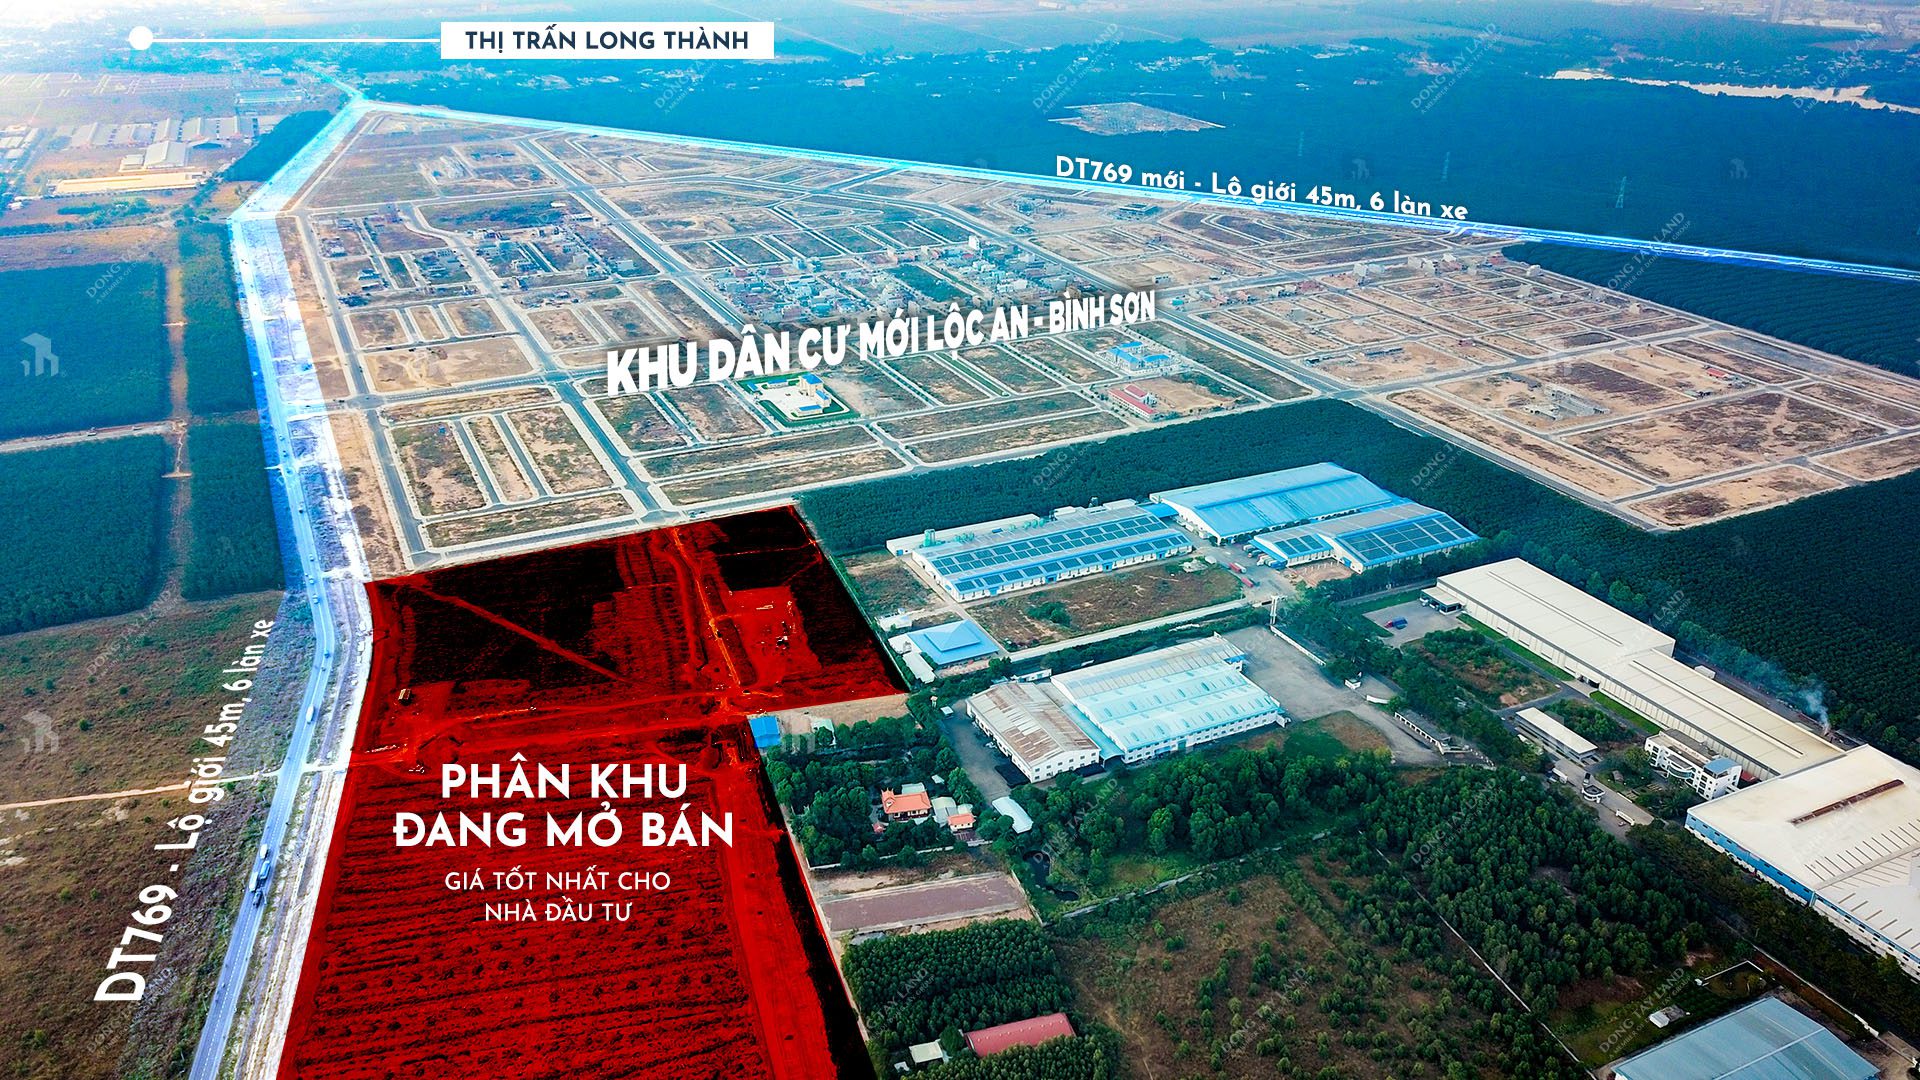 vị trí phân khu đang mở bán - Khu dân cư Lộc An - Bình Sơn